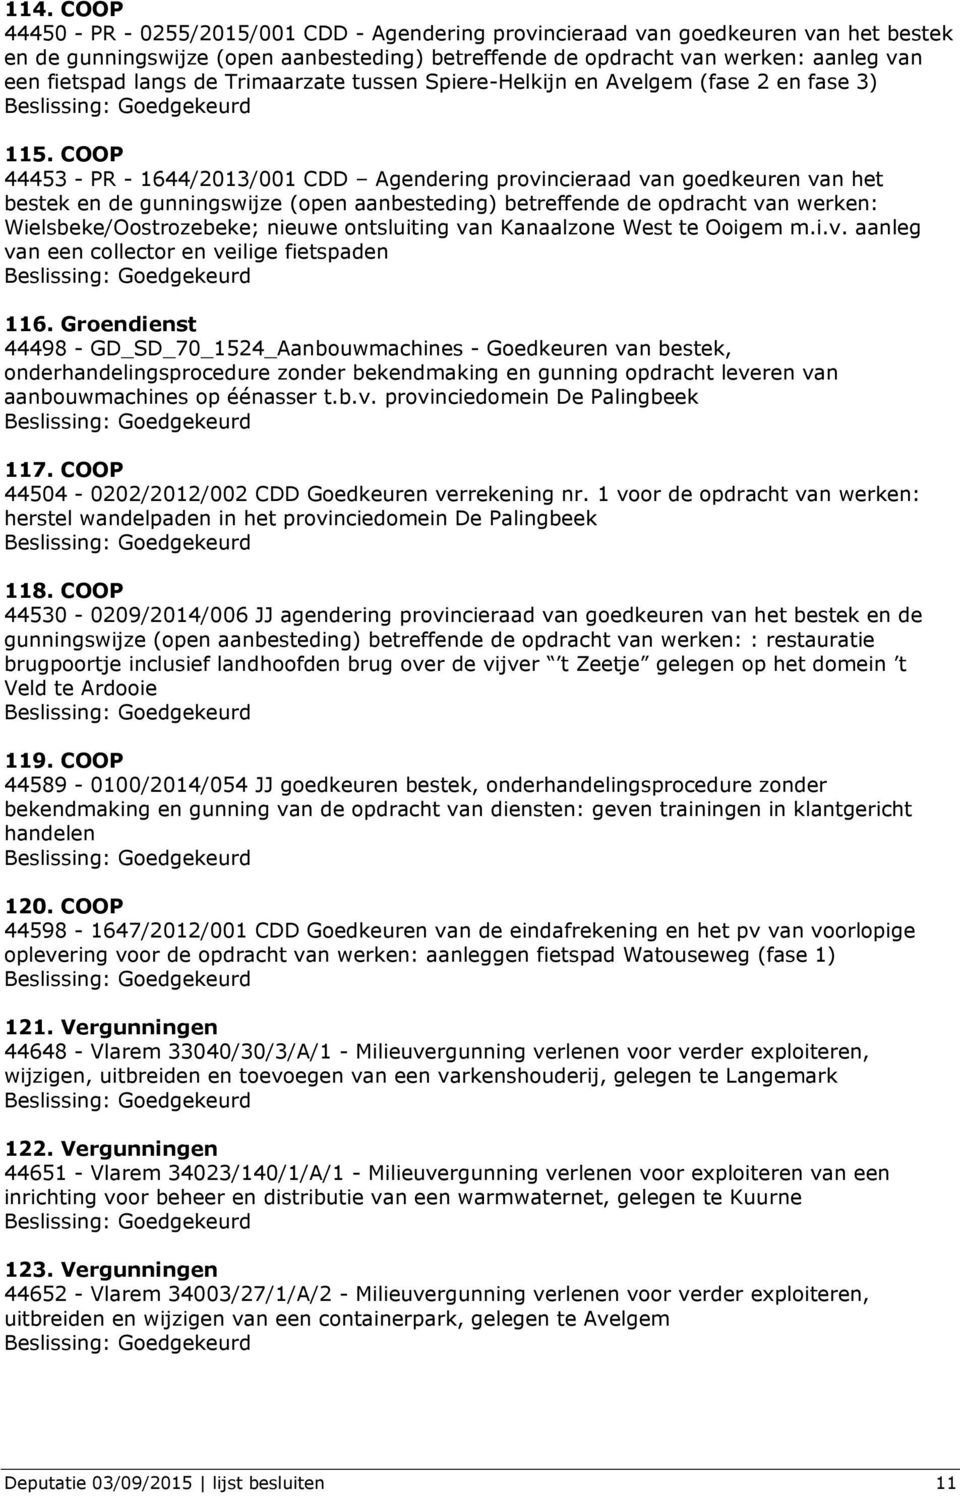 COOP 44453 - PR - 1644/2013/001 CDD Agendering provincieraad van goedkeuren van het bestek en de gunningswijze (open aanbesteding) betreffende de opdracht van werken: Wielsbeke/Oostrozebeke; nieuwe